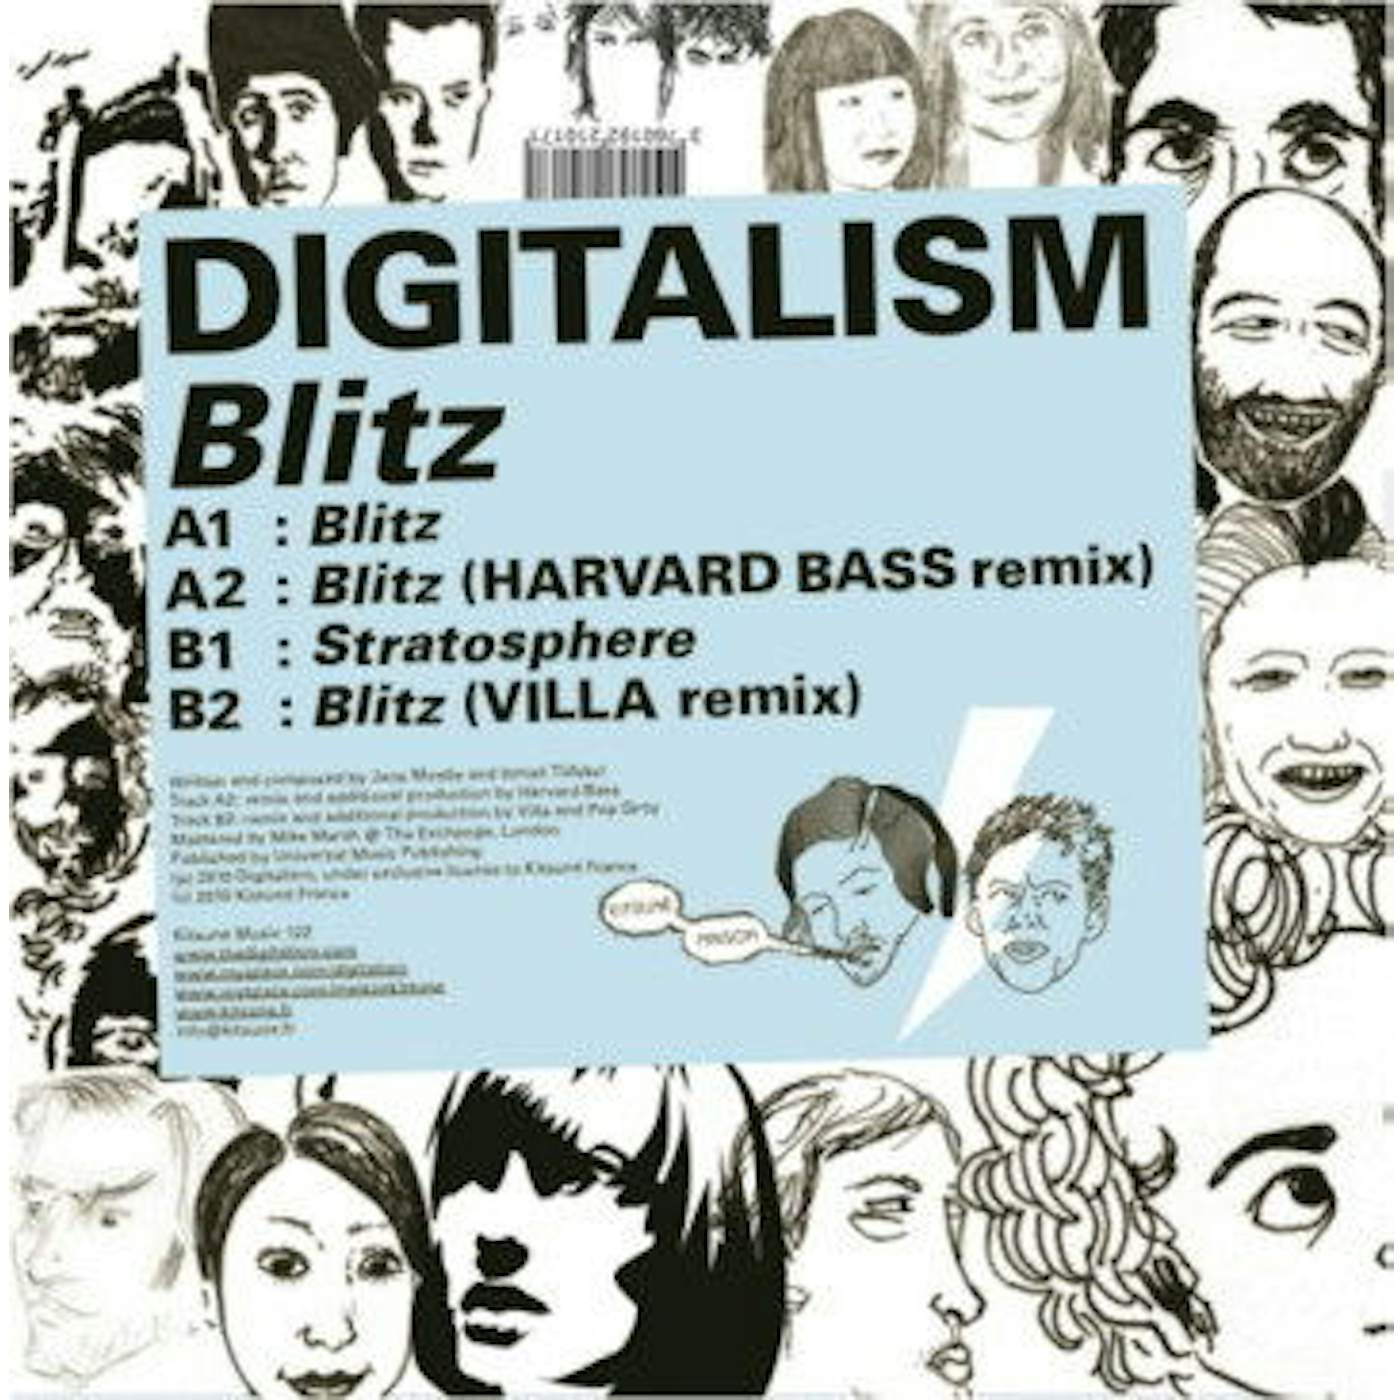 Digitalism Blitz Vinyl Record